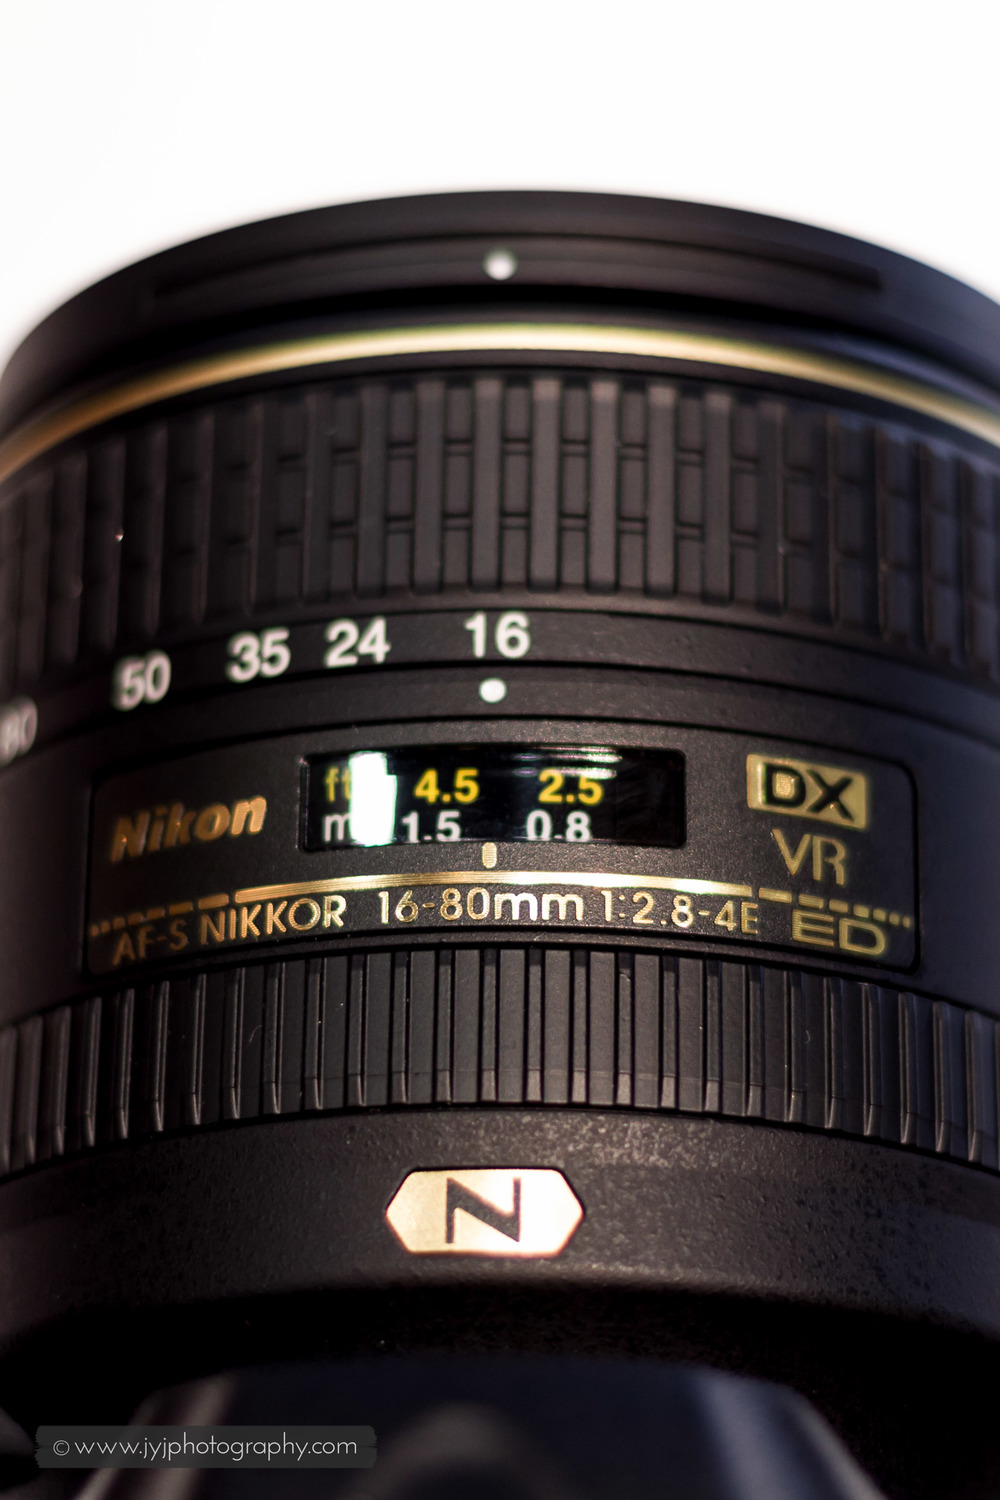  D500's kit lens, Nikkor 16-80mm f/2.8-4E 